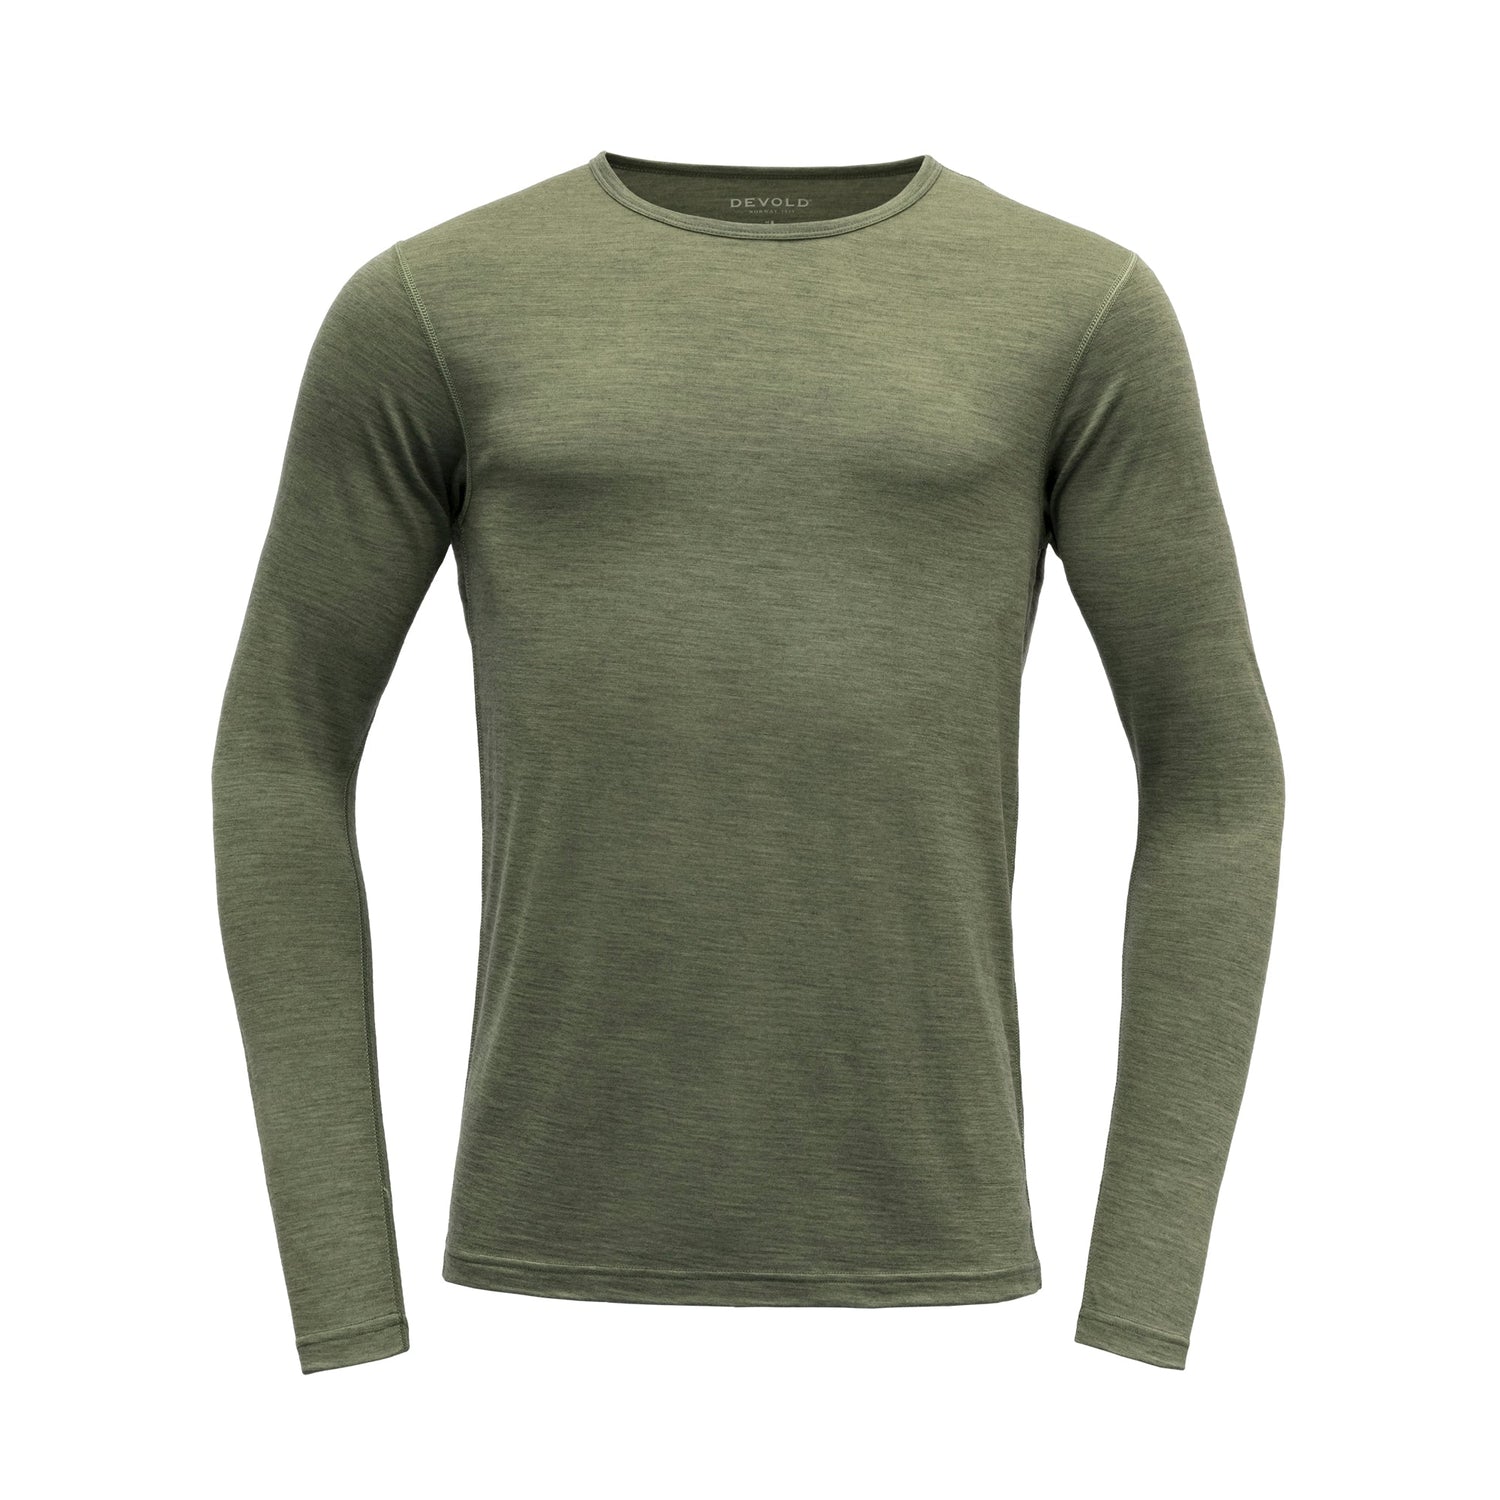 Devold M's Breeze Shirt - 100% Merino Wool Lichen Melange Shirt